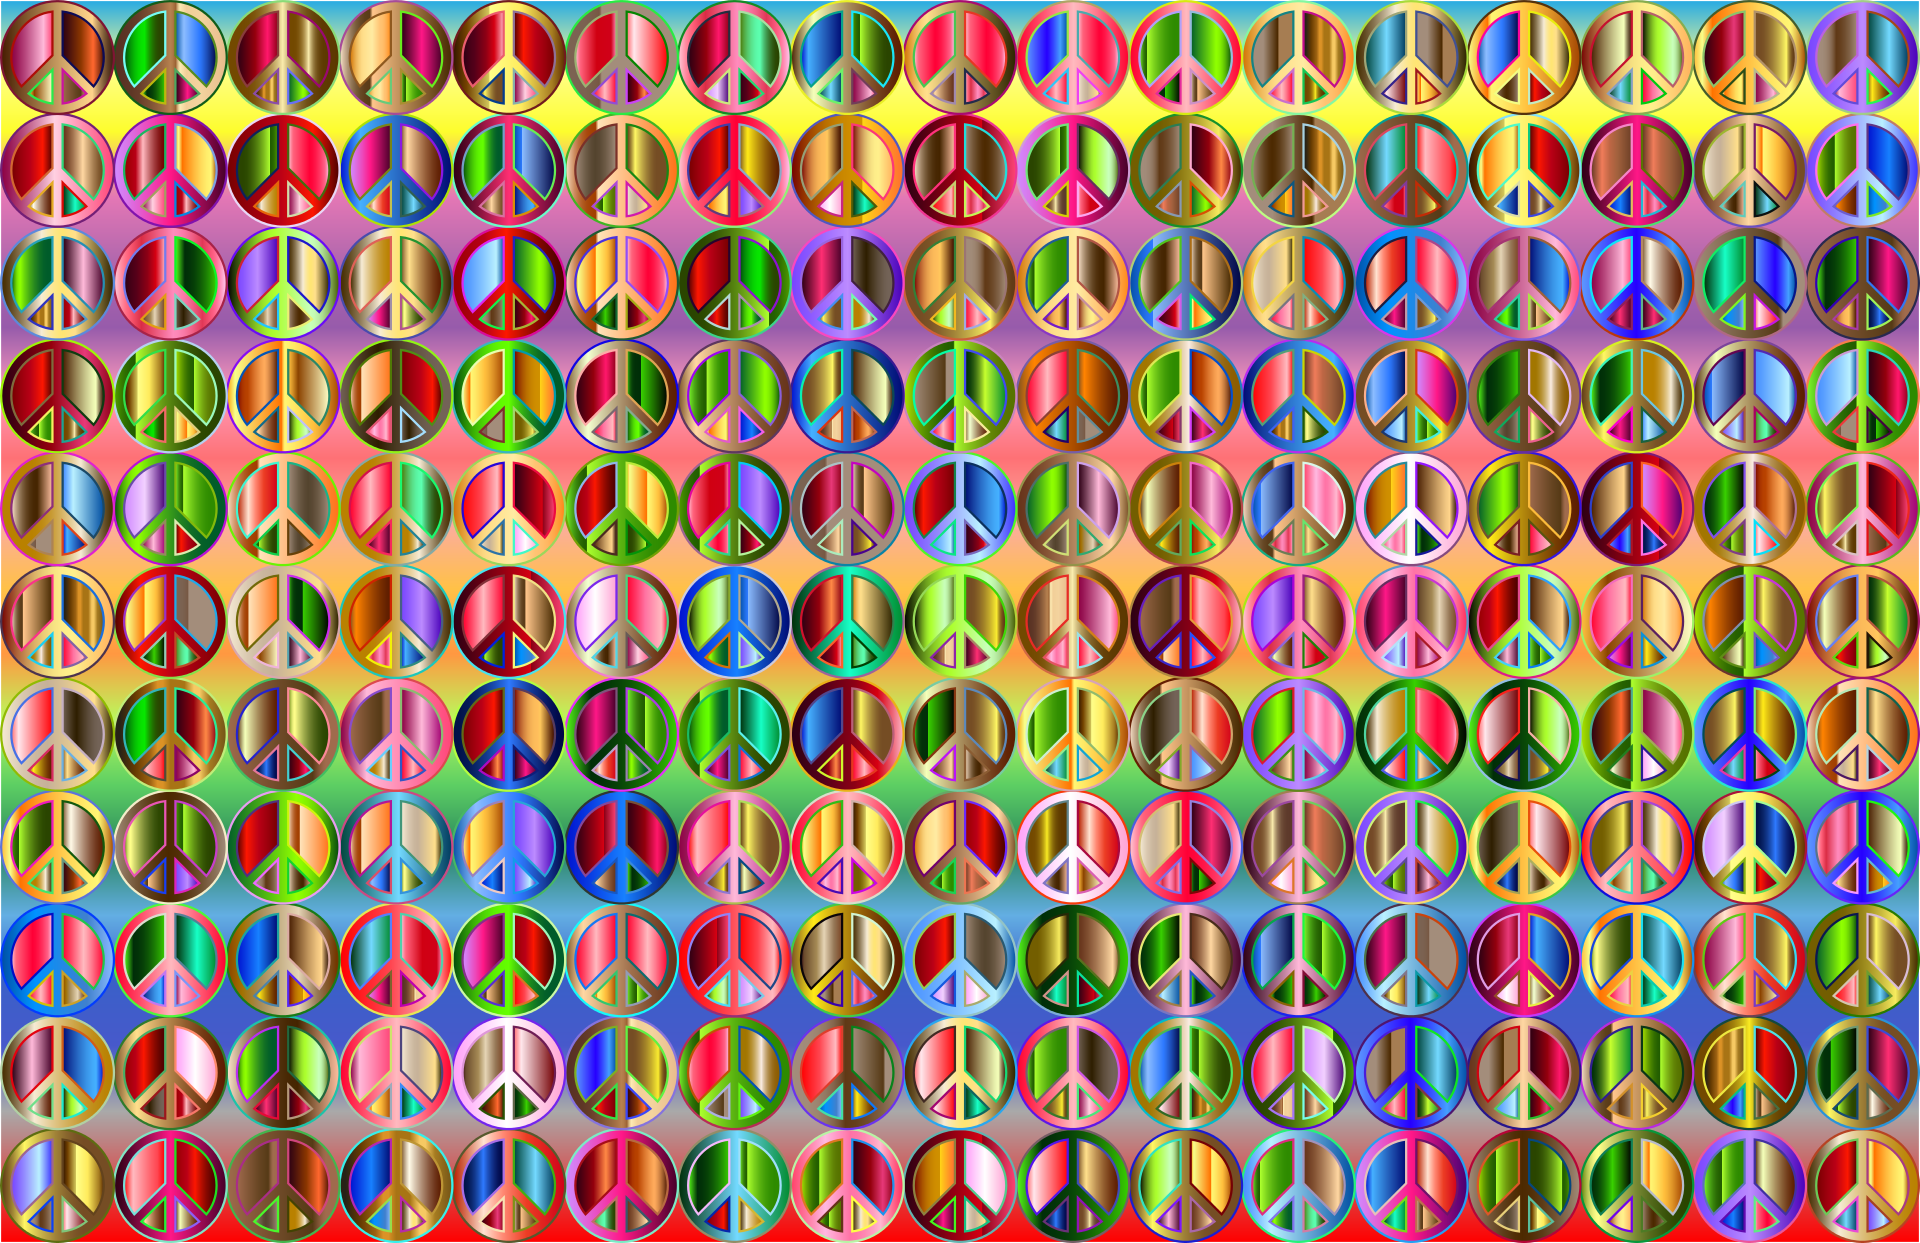 Rainbow of peace symbols by Gordon Johnson